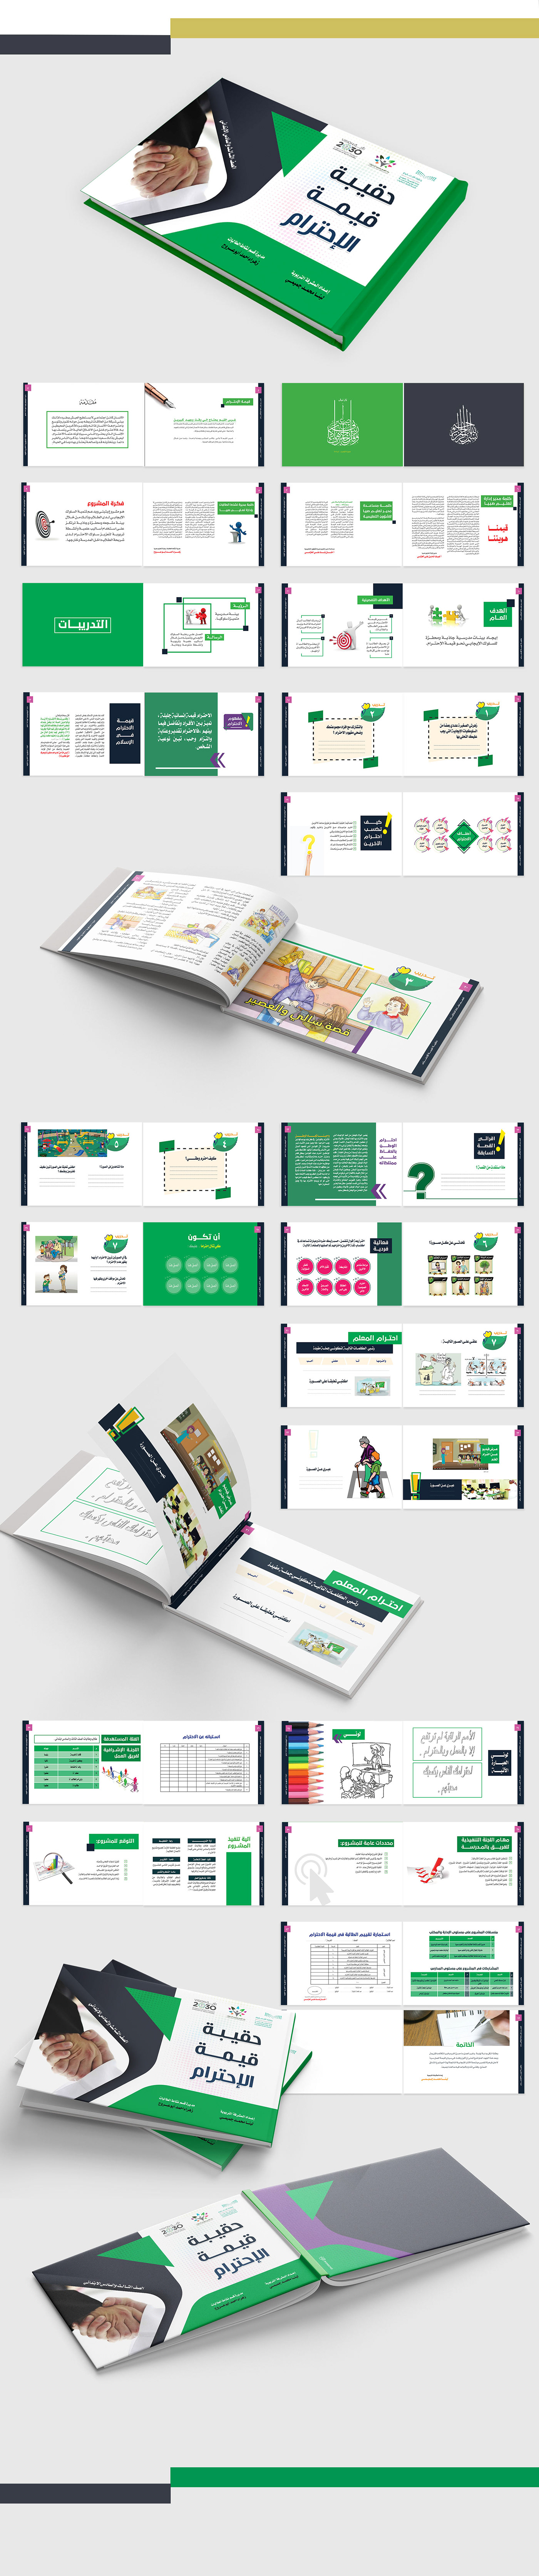 books indesgn edu print profile paper KSA arabic School book design